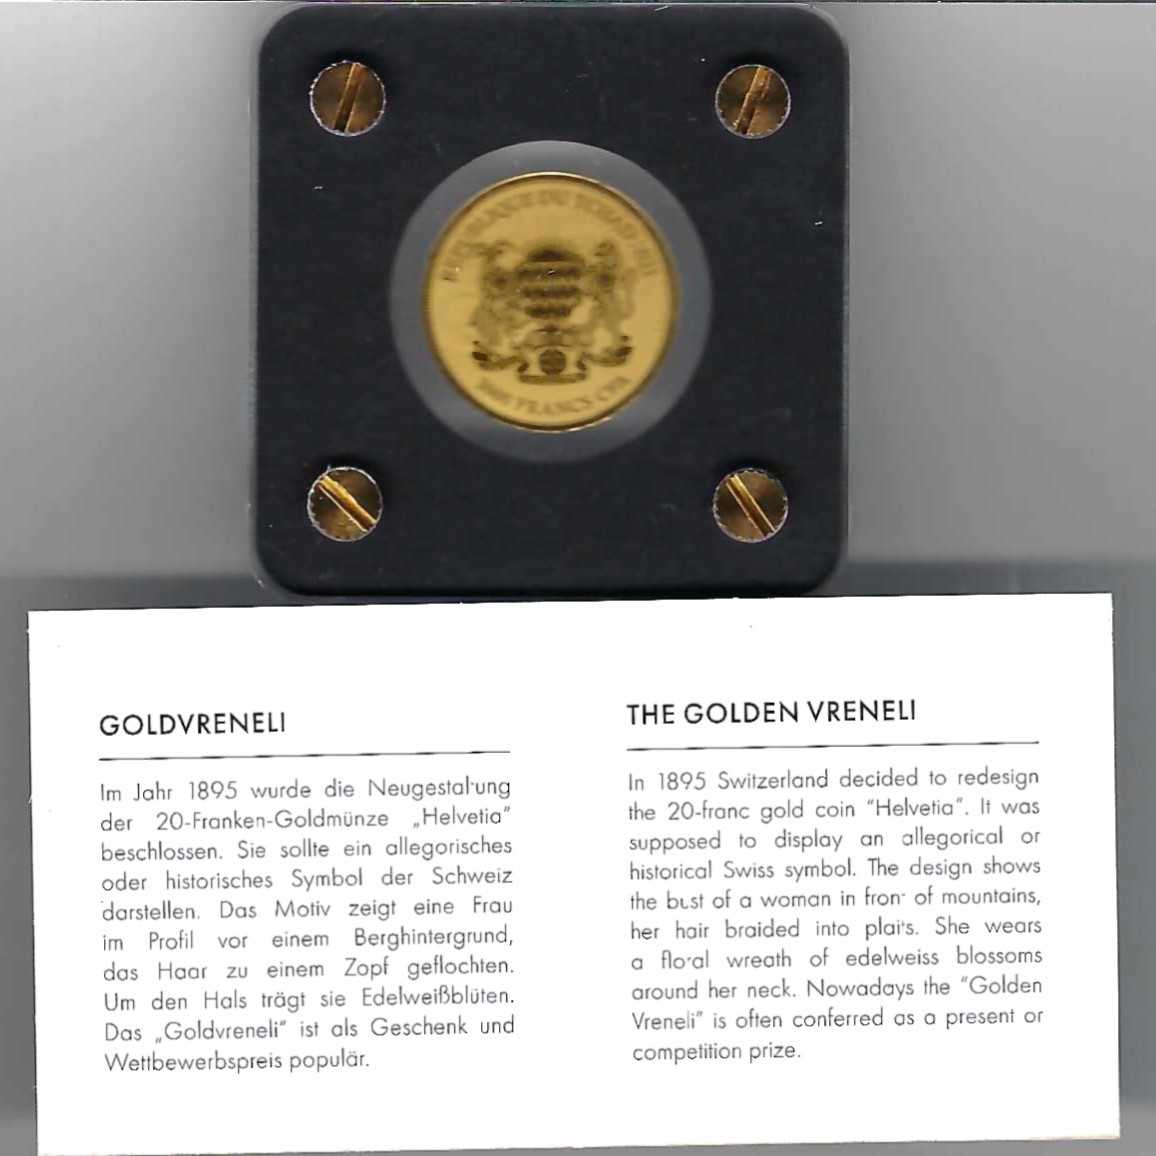  Goldbarren Tschad 3000 Francs 2021 Feingold 999 1/500 oz Golden Gate Koblenz Frank Maurer AB 737   